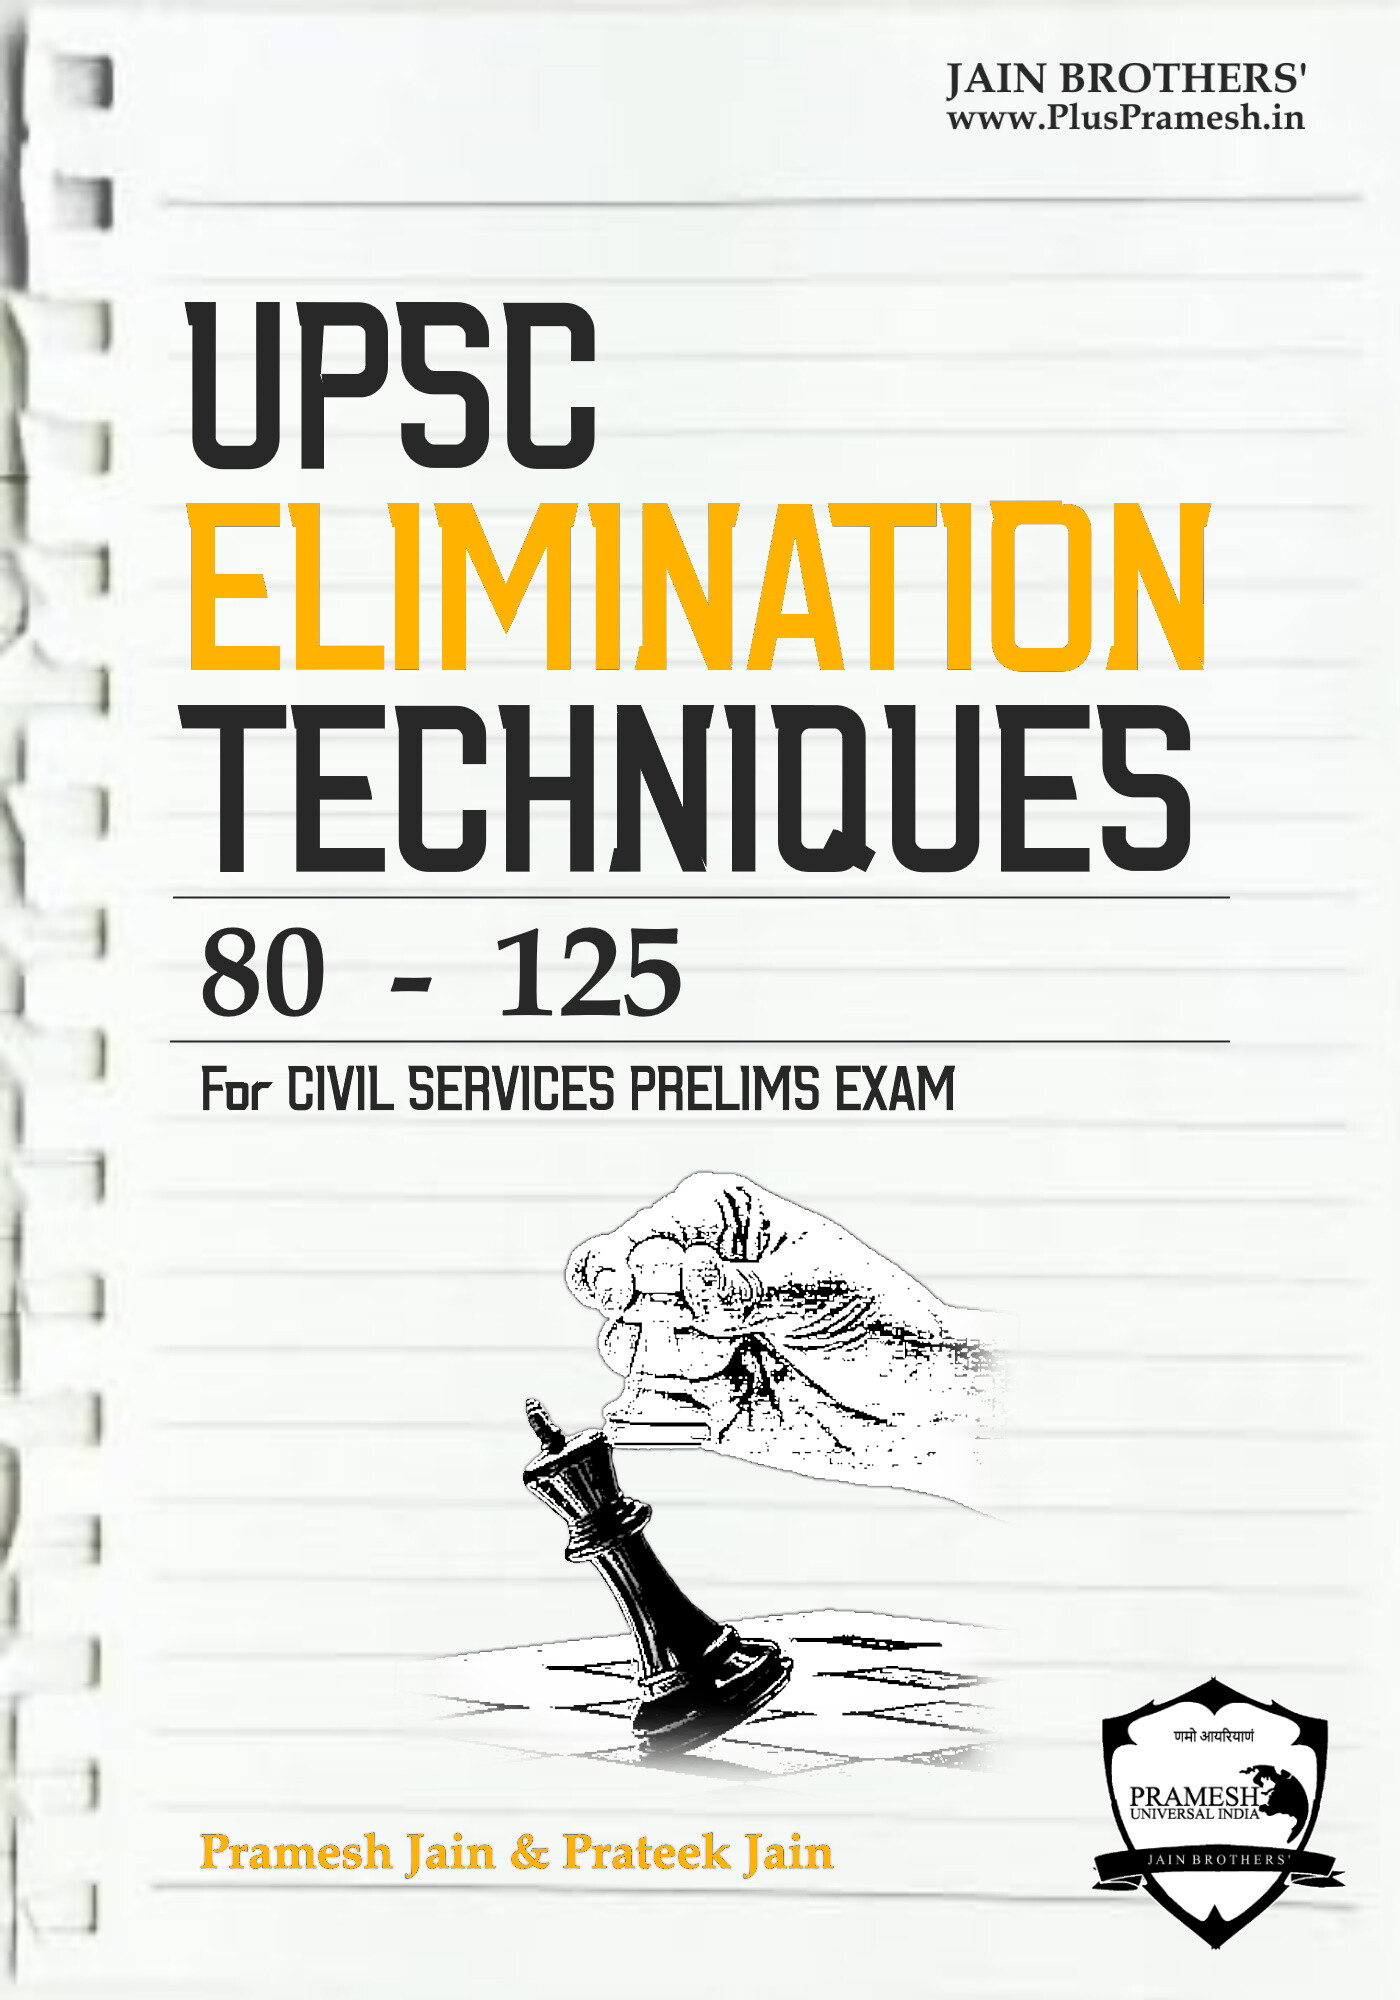 UPSC Elimination Techniques